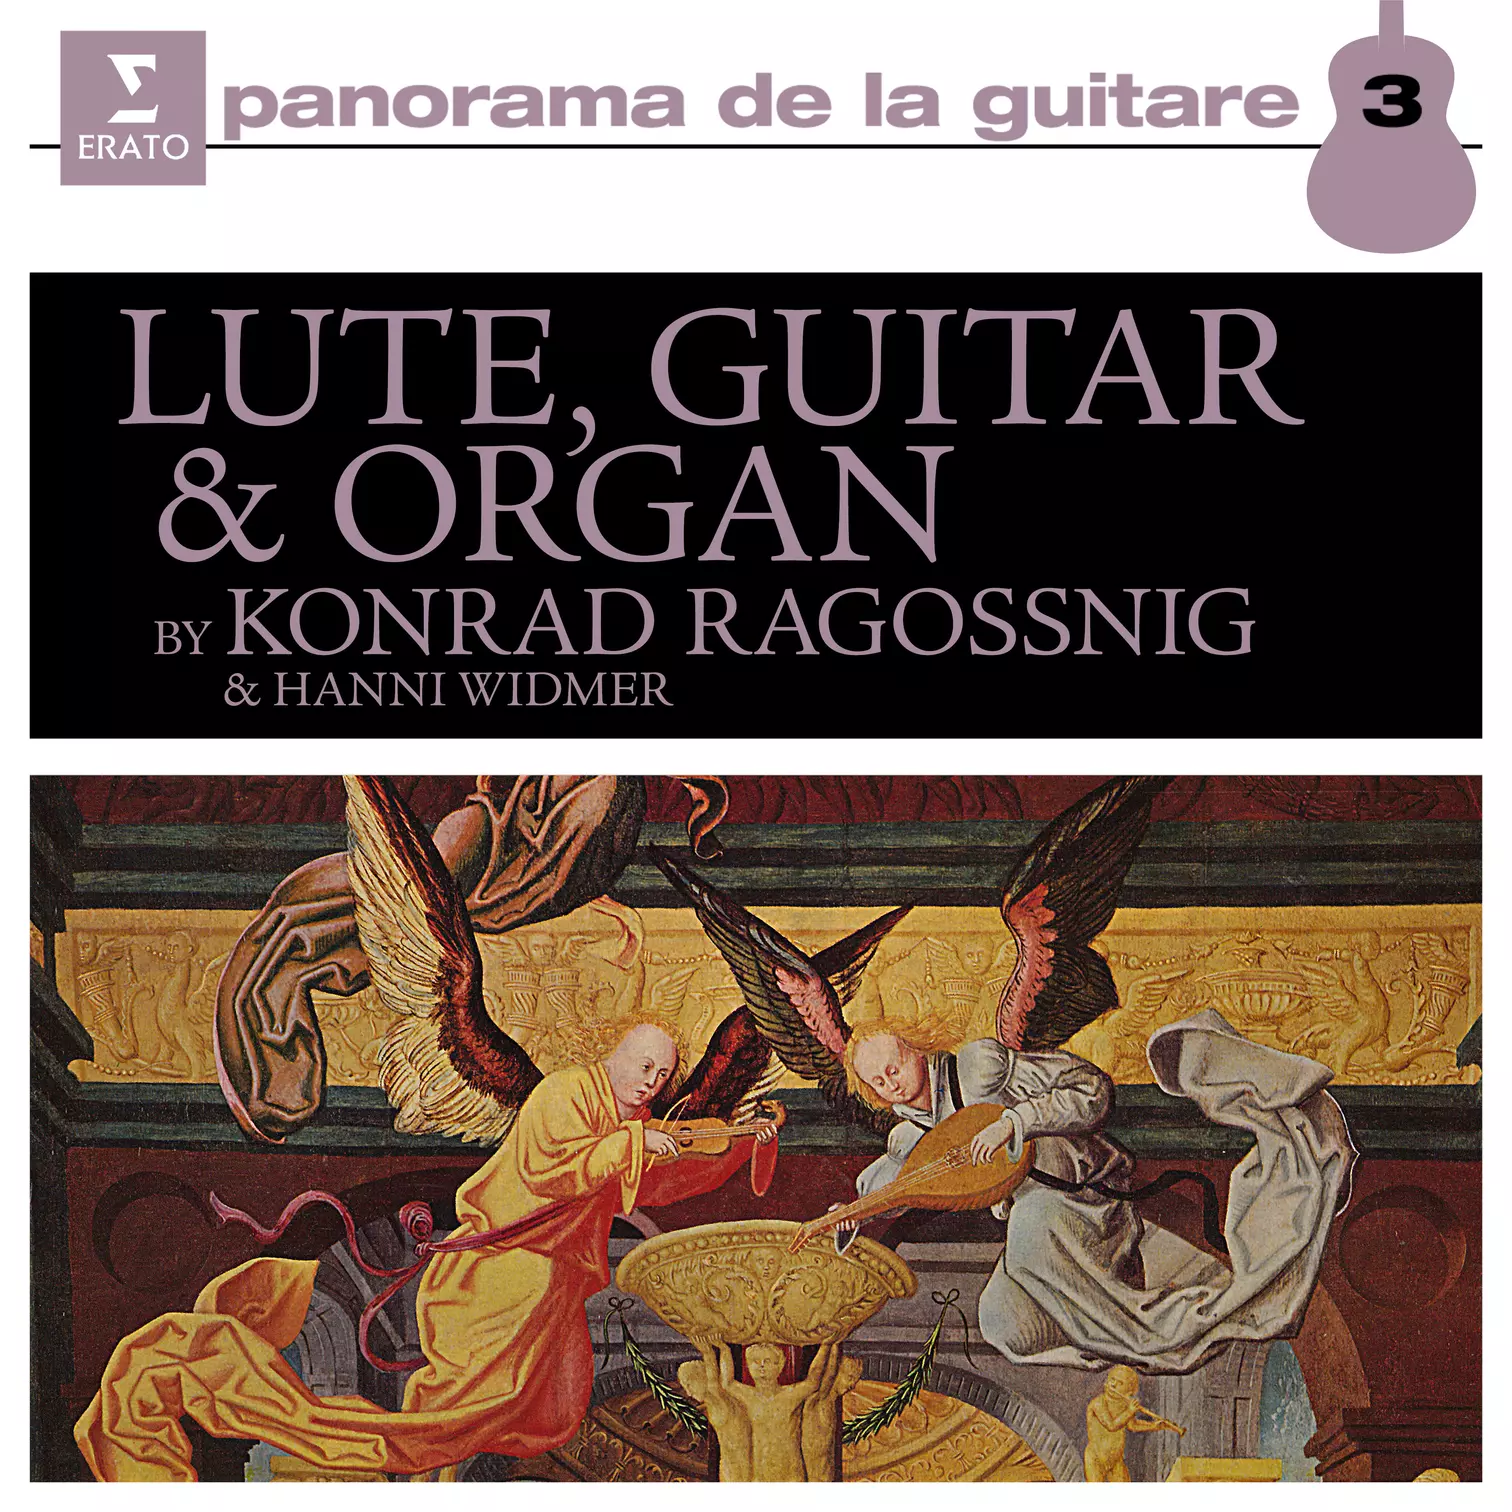 Lute, Guitar & Organ